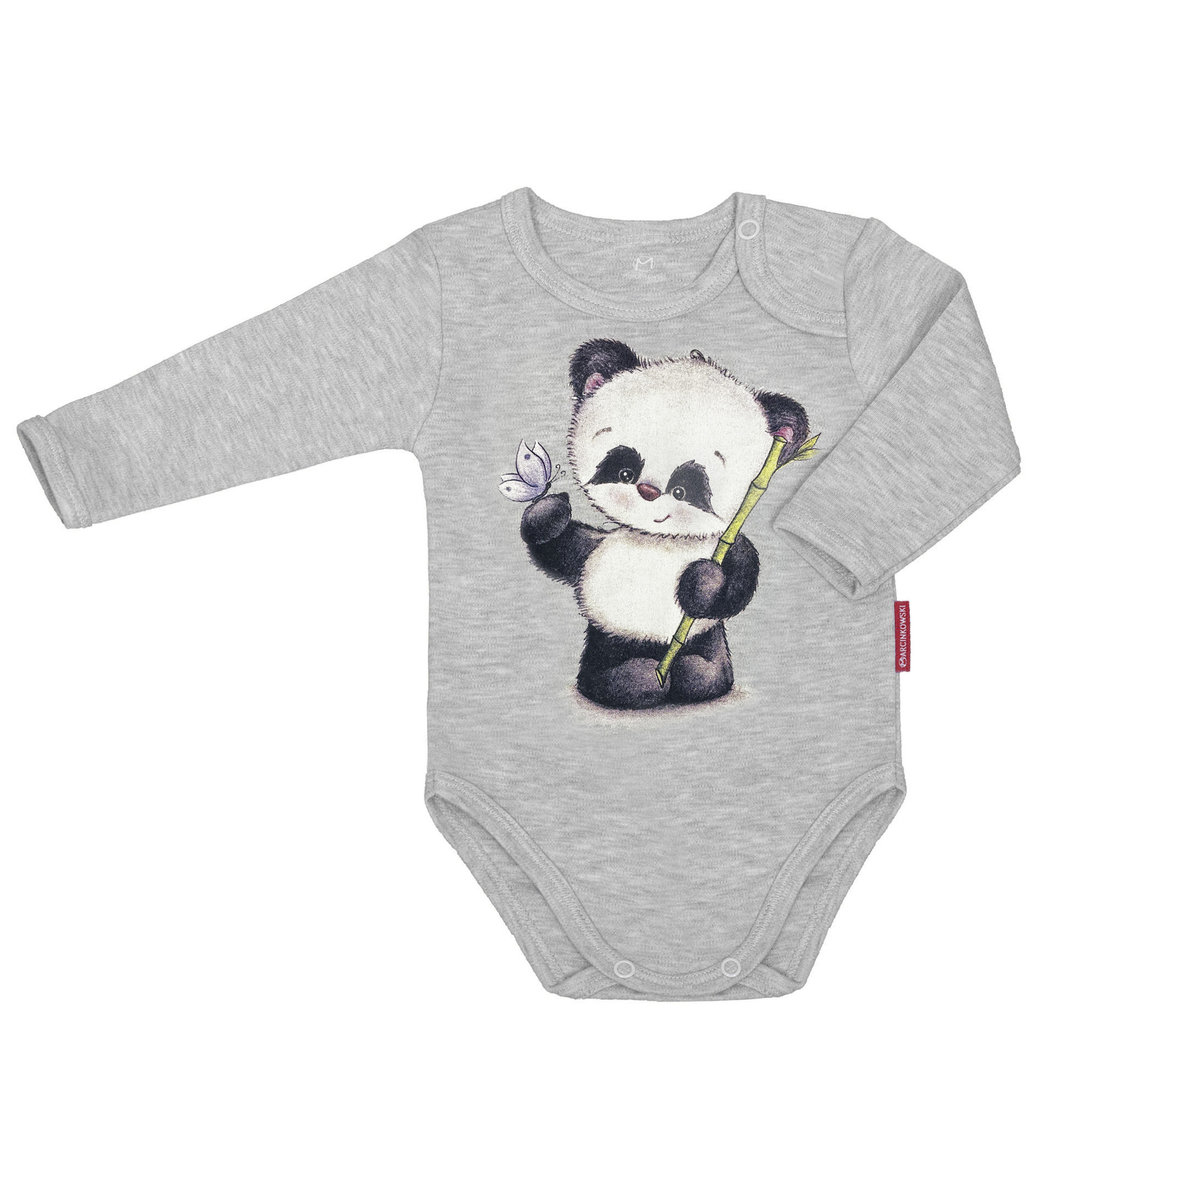 Body dziecięce dla chłopca i dziewczynki długie bawełniane szare z nadrukiem panda 92